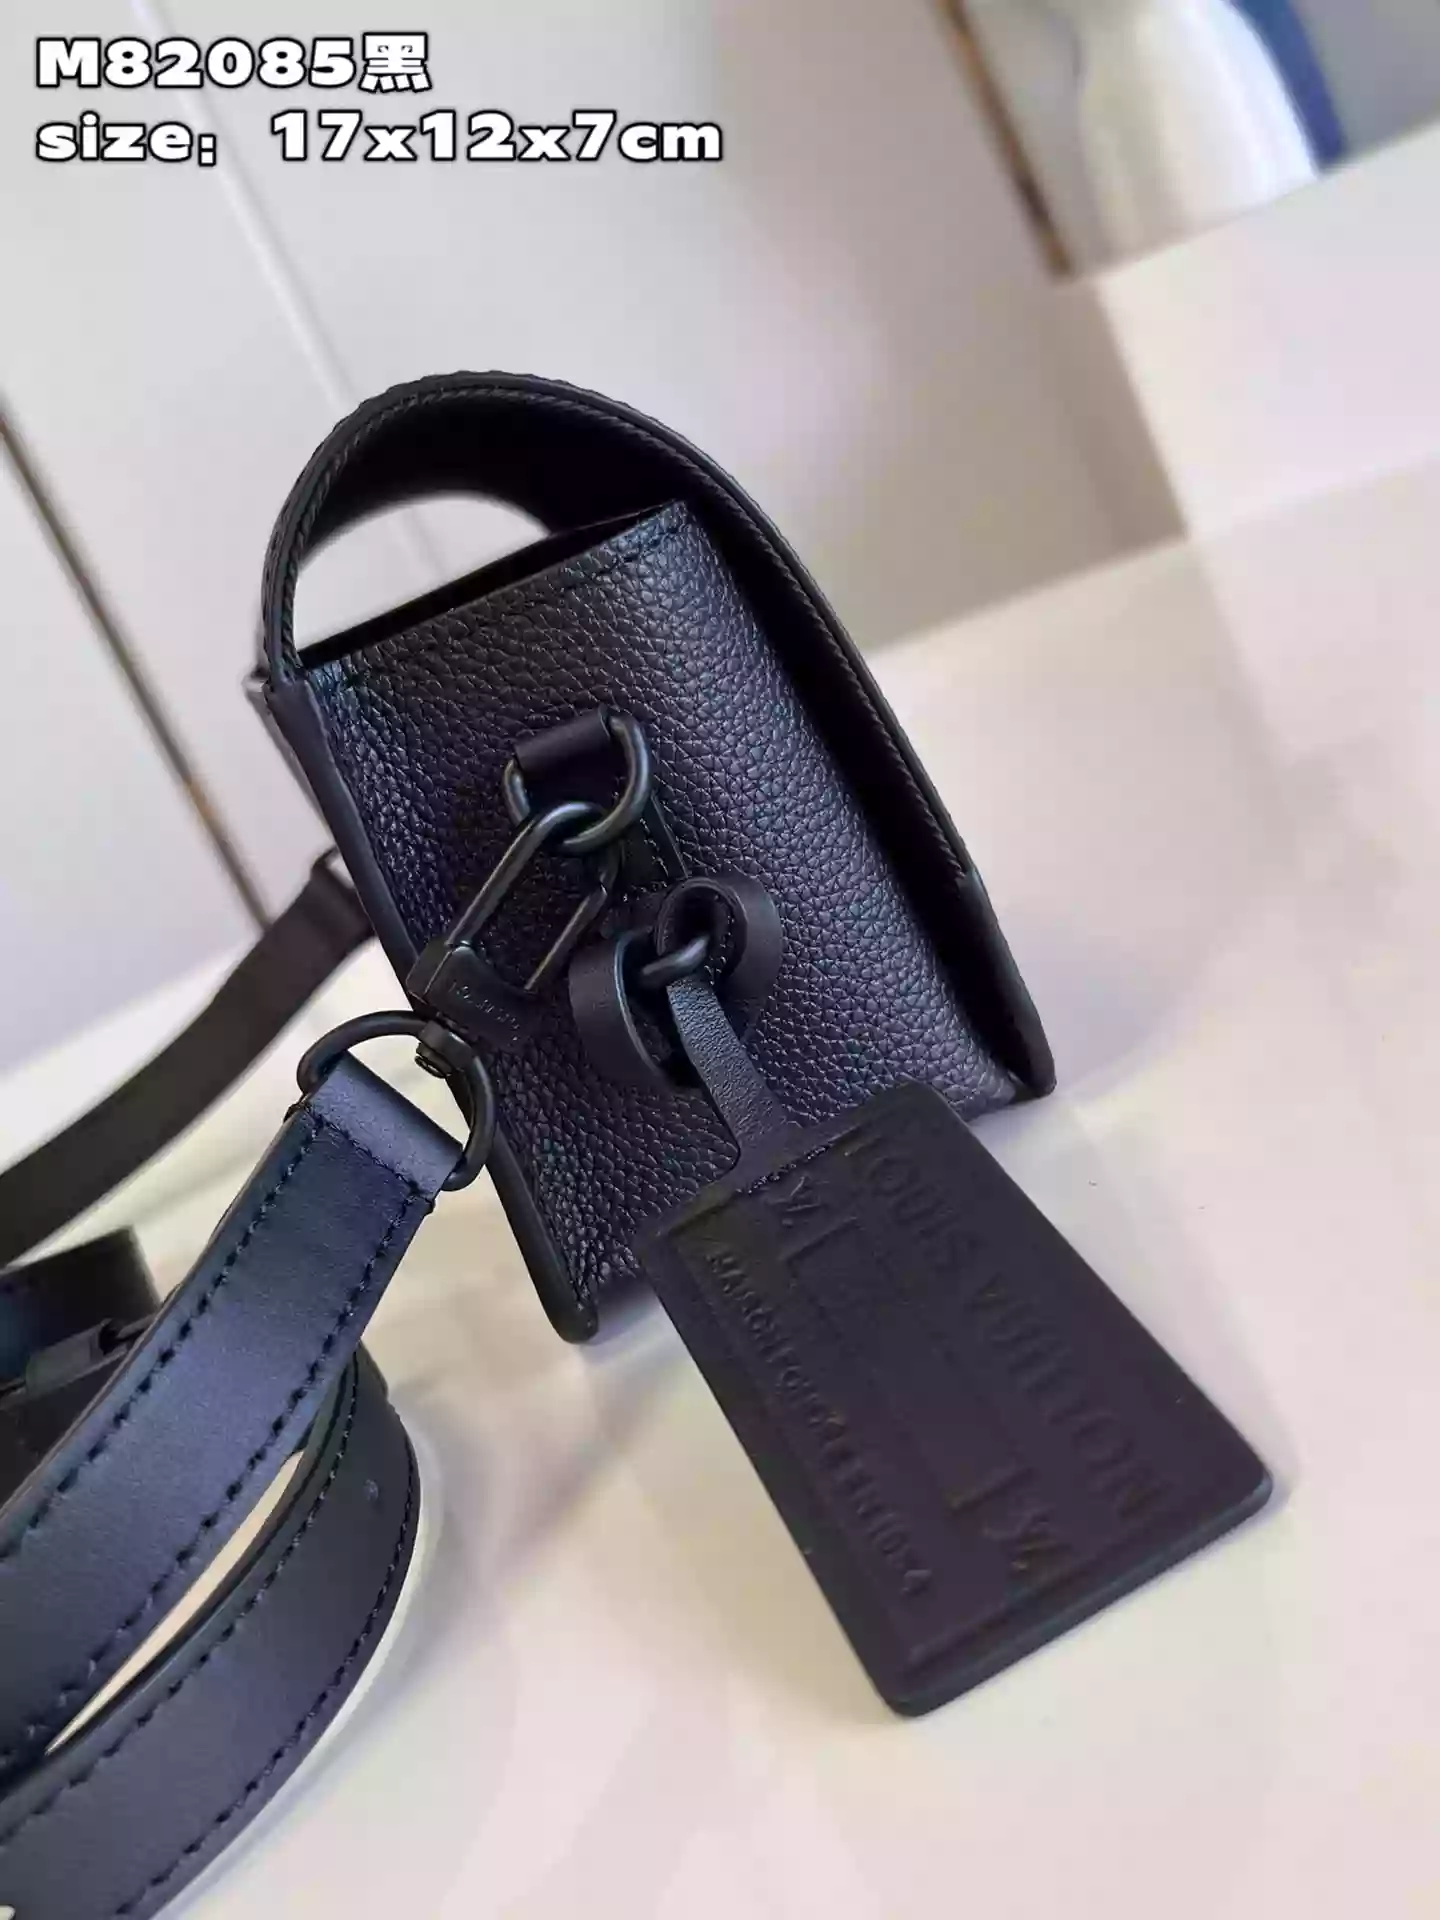 Louis Vuitton FASTLINE Wearable Wallet, Black, One Size